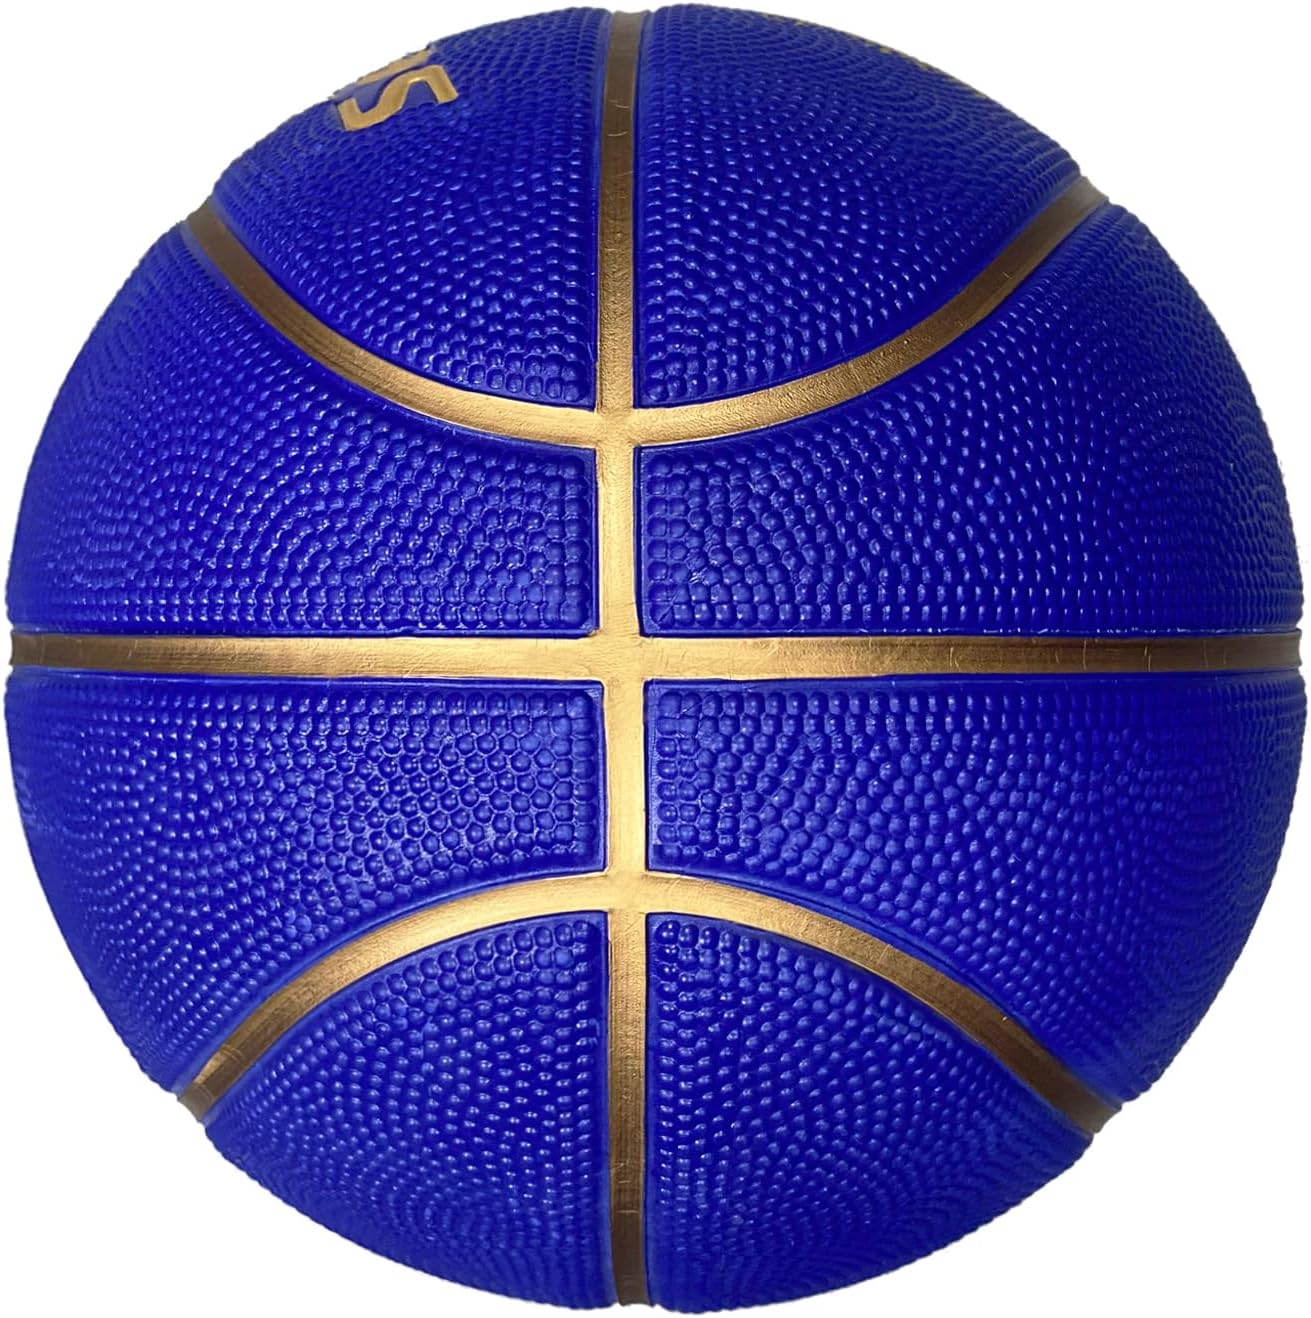 Senston Basketball 29.5" Outdoor Indoor Mens Basketball Ball Official Size 7 Basketballs